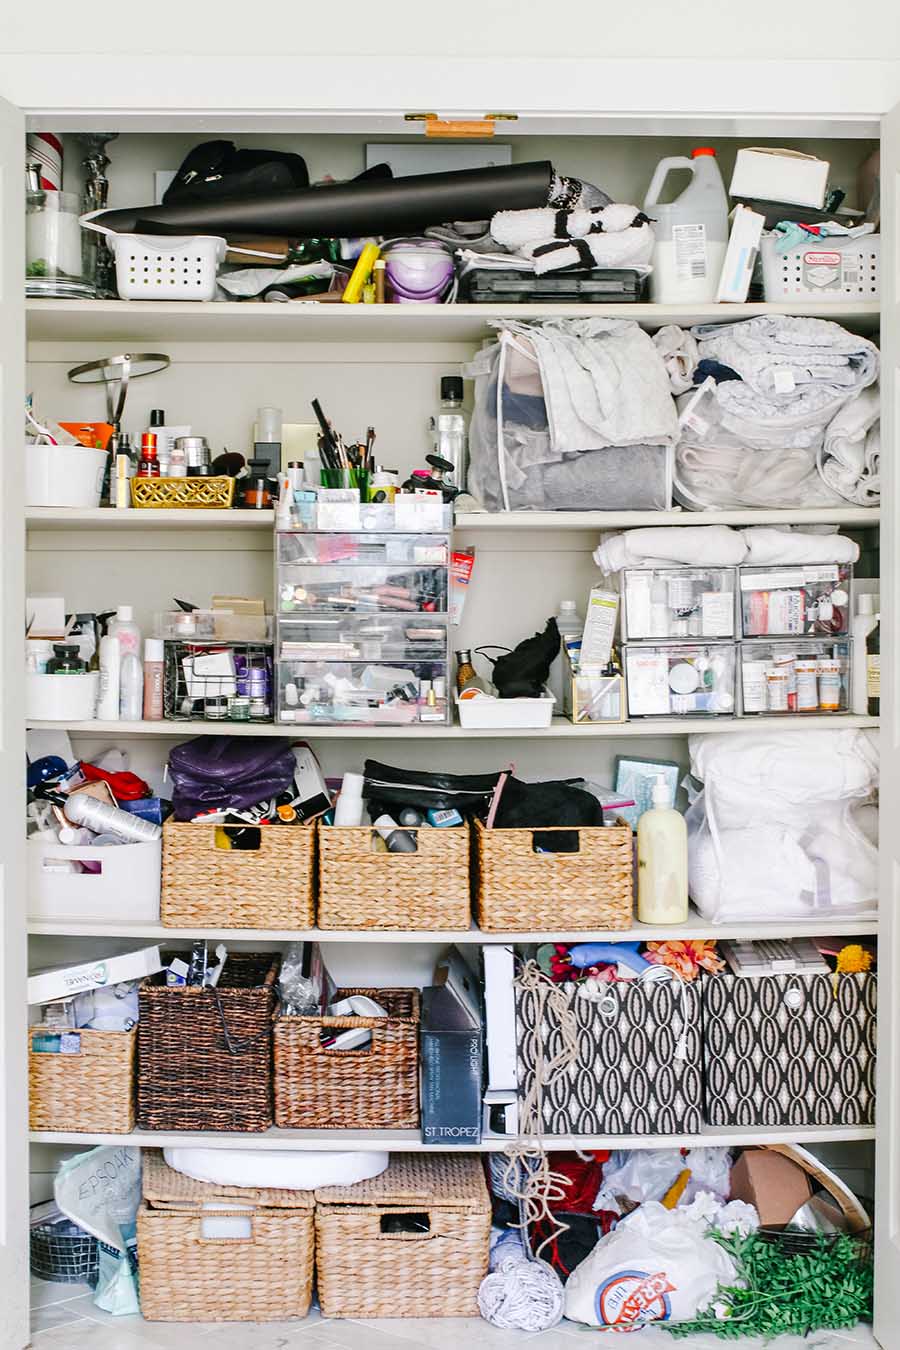 13 Best Linen Closet Organization Ideas - How To Organize a Linen